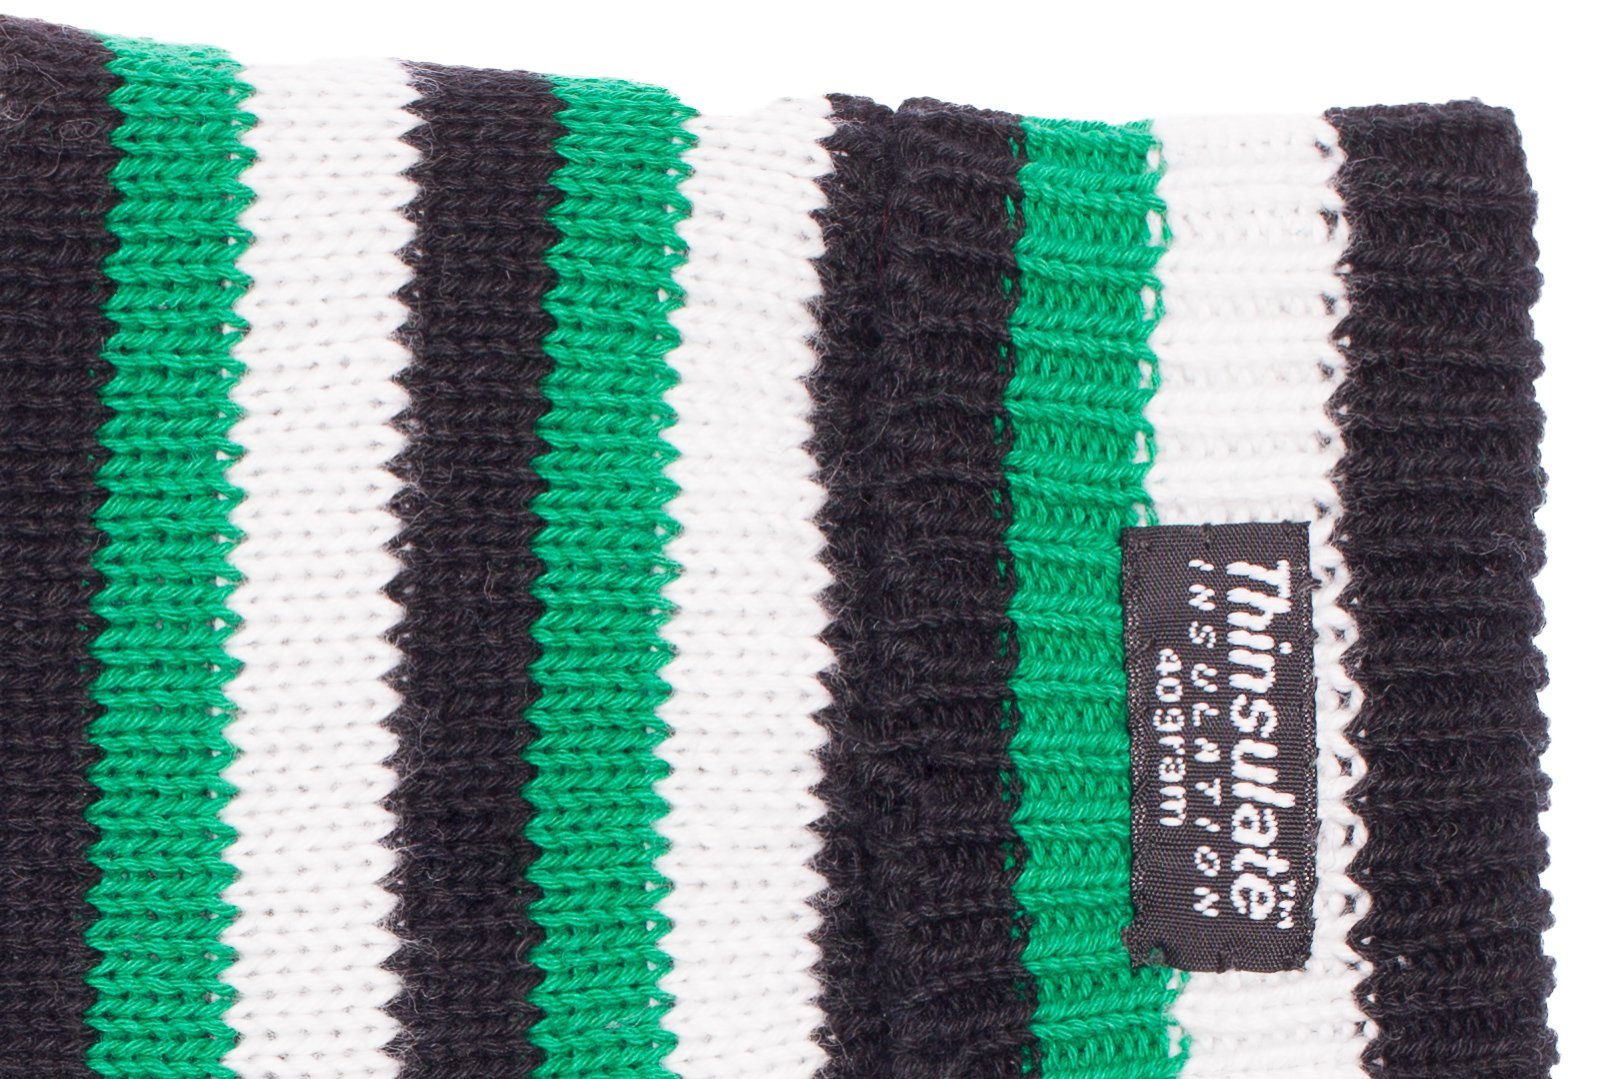 Strickhandschuhe schwarz-weiß-grün Herren-2805 EEM